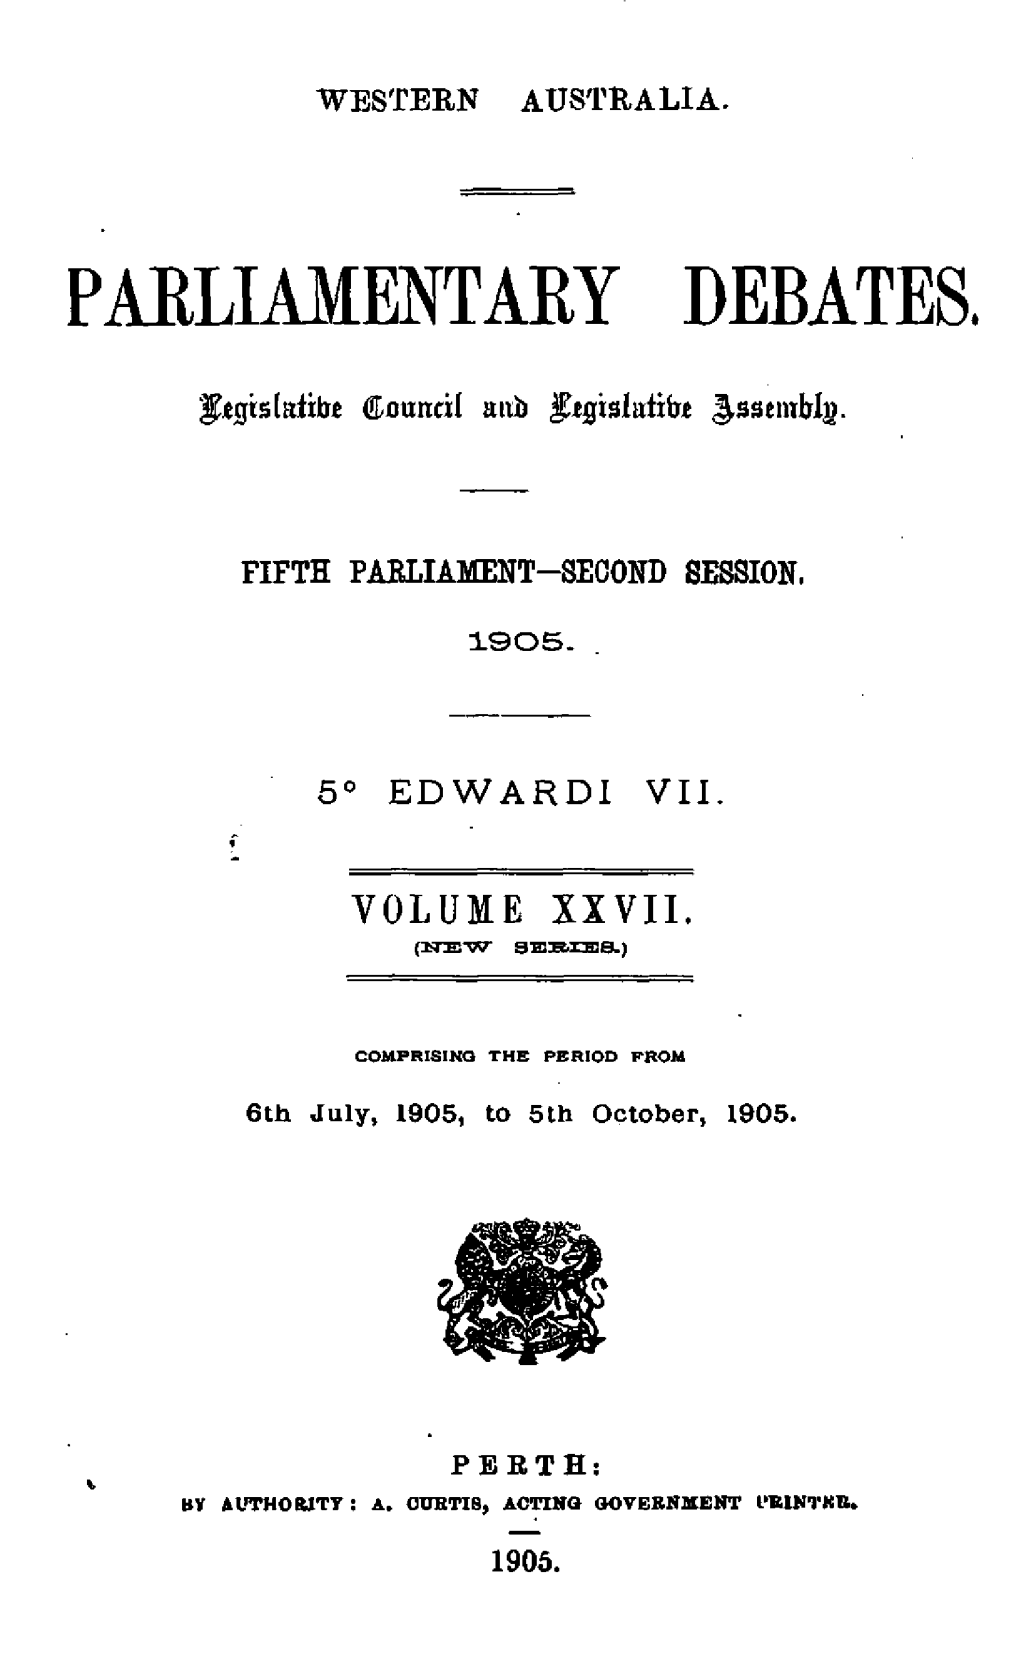 Hansard Index 1905